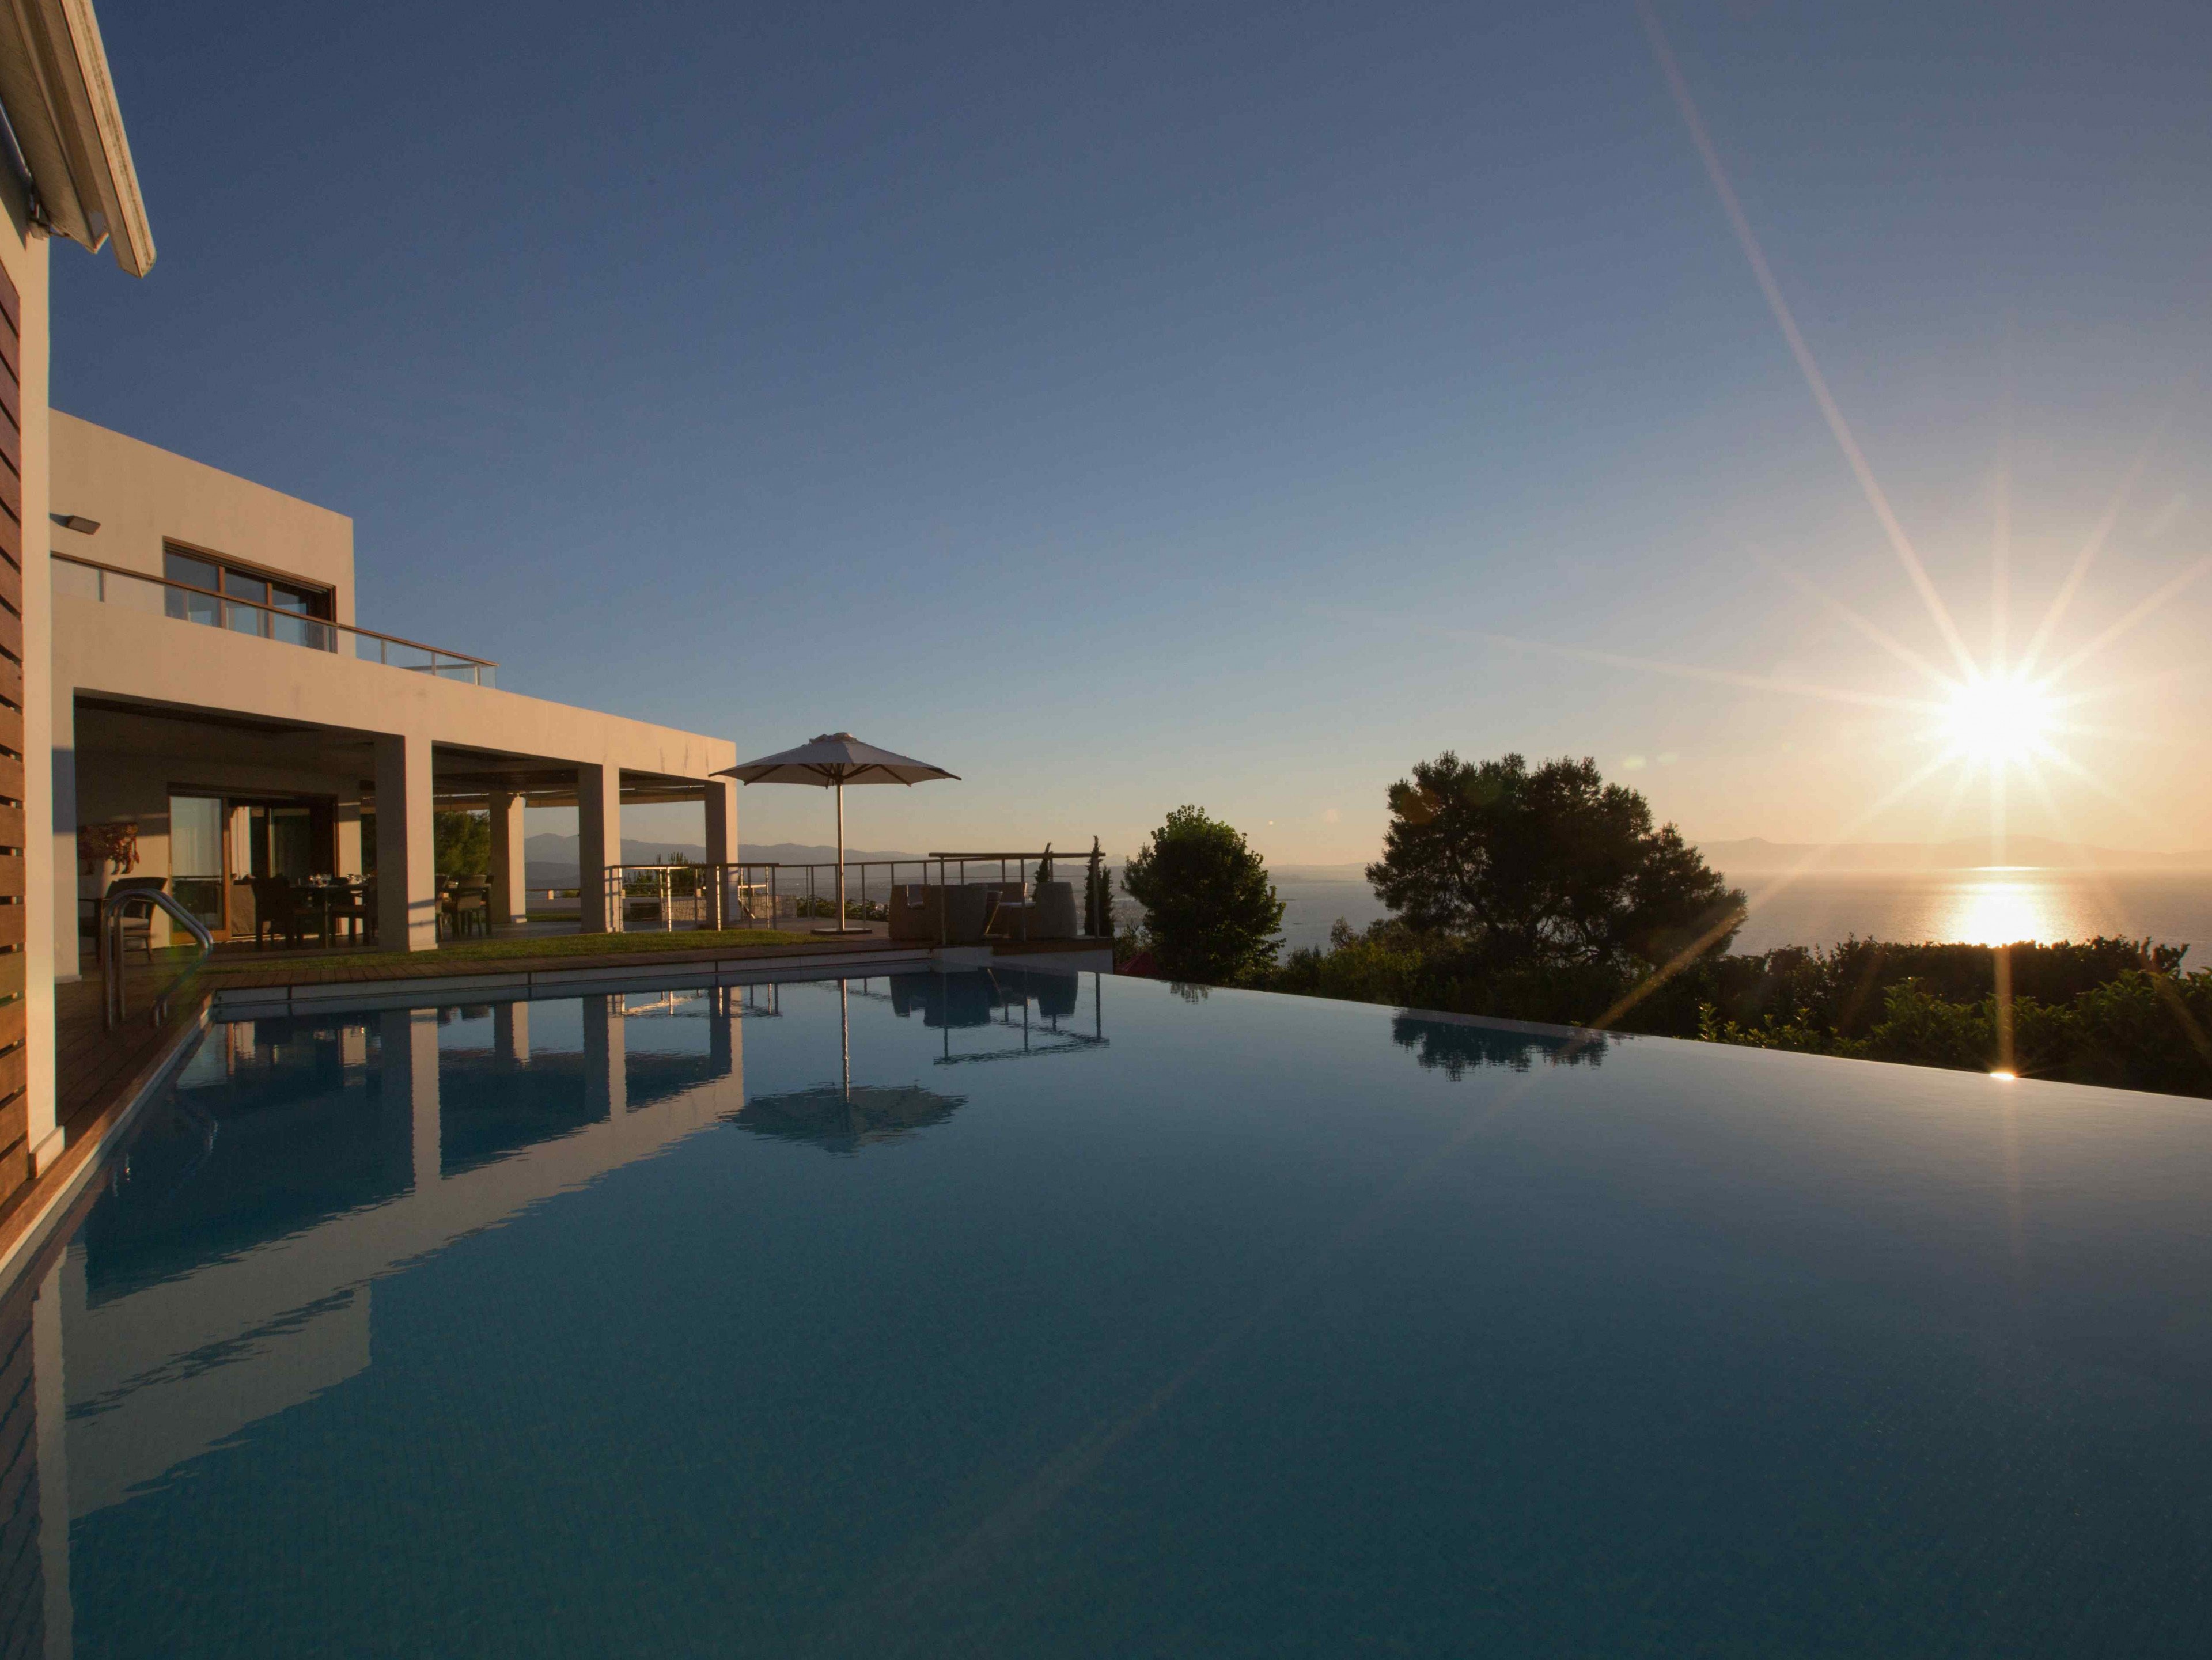 Terra Creta villa in Greece with private pool